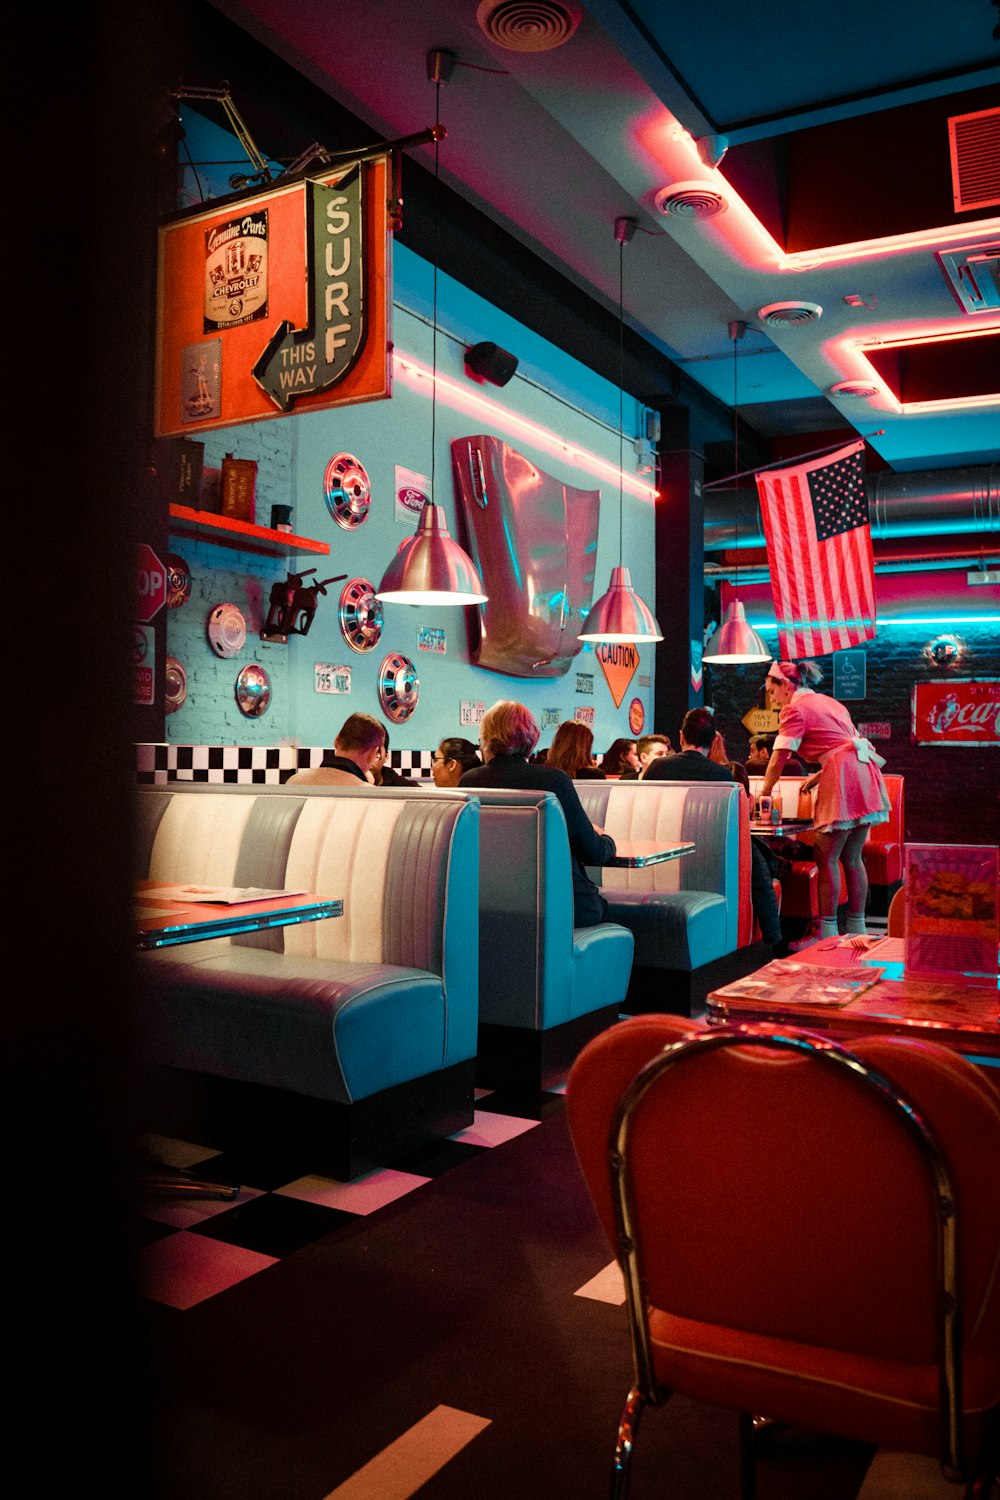 50s Diner Pictures Download Free Images On Unsplash